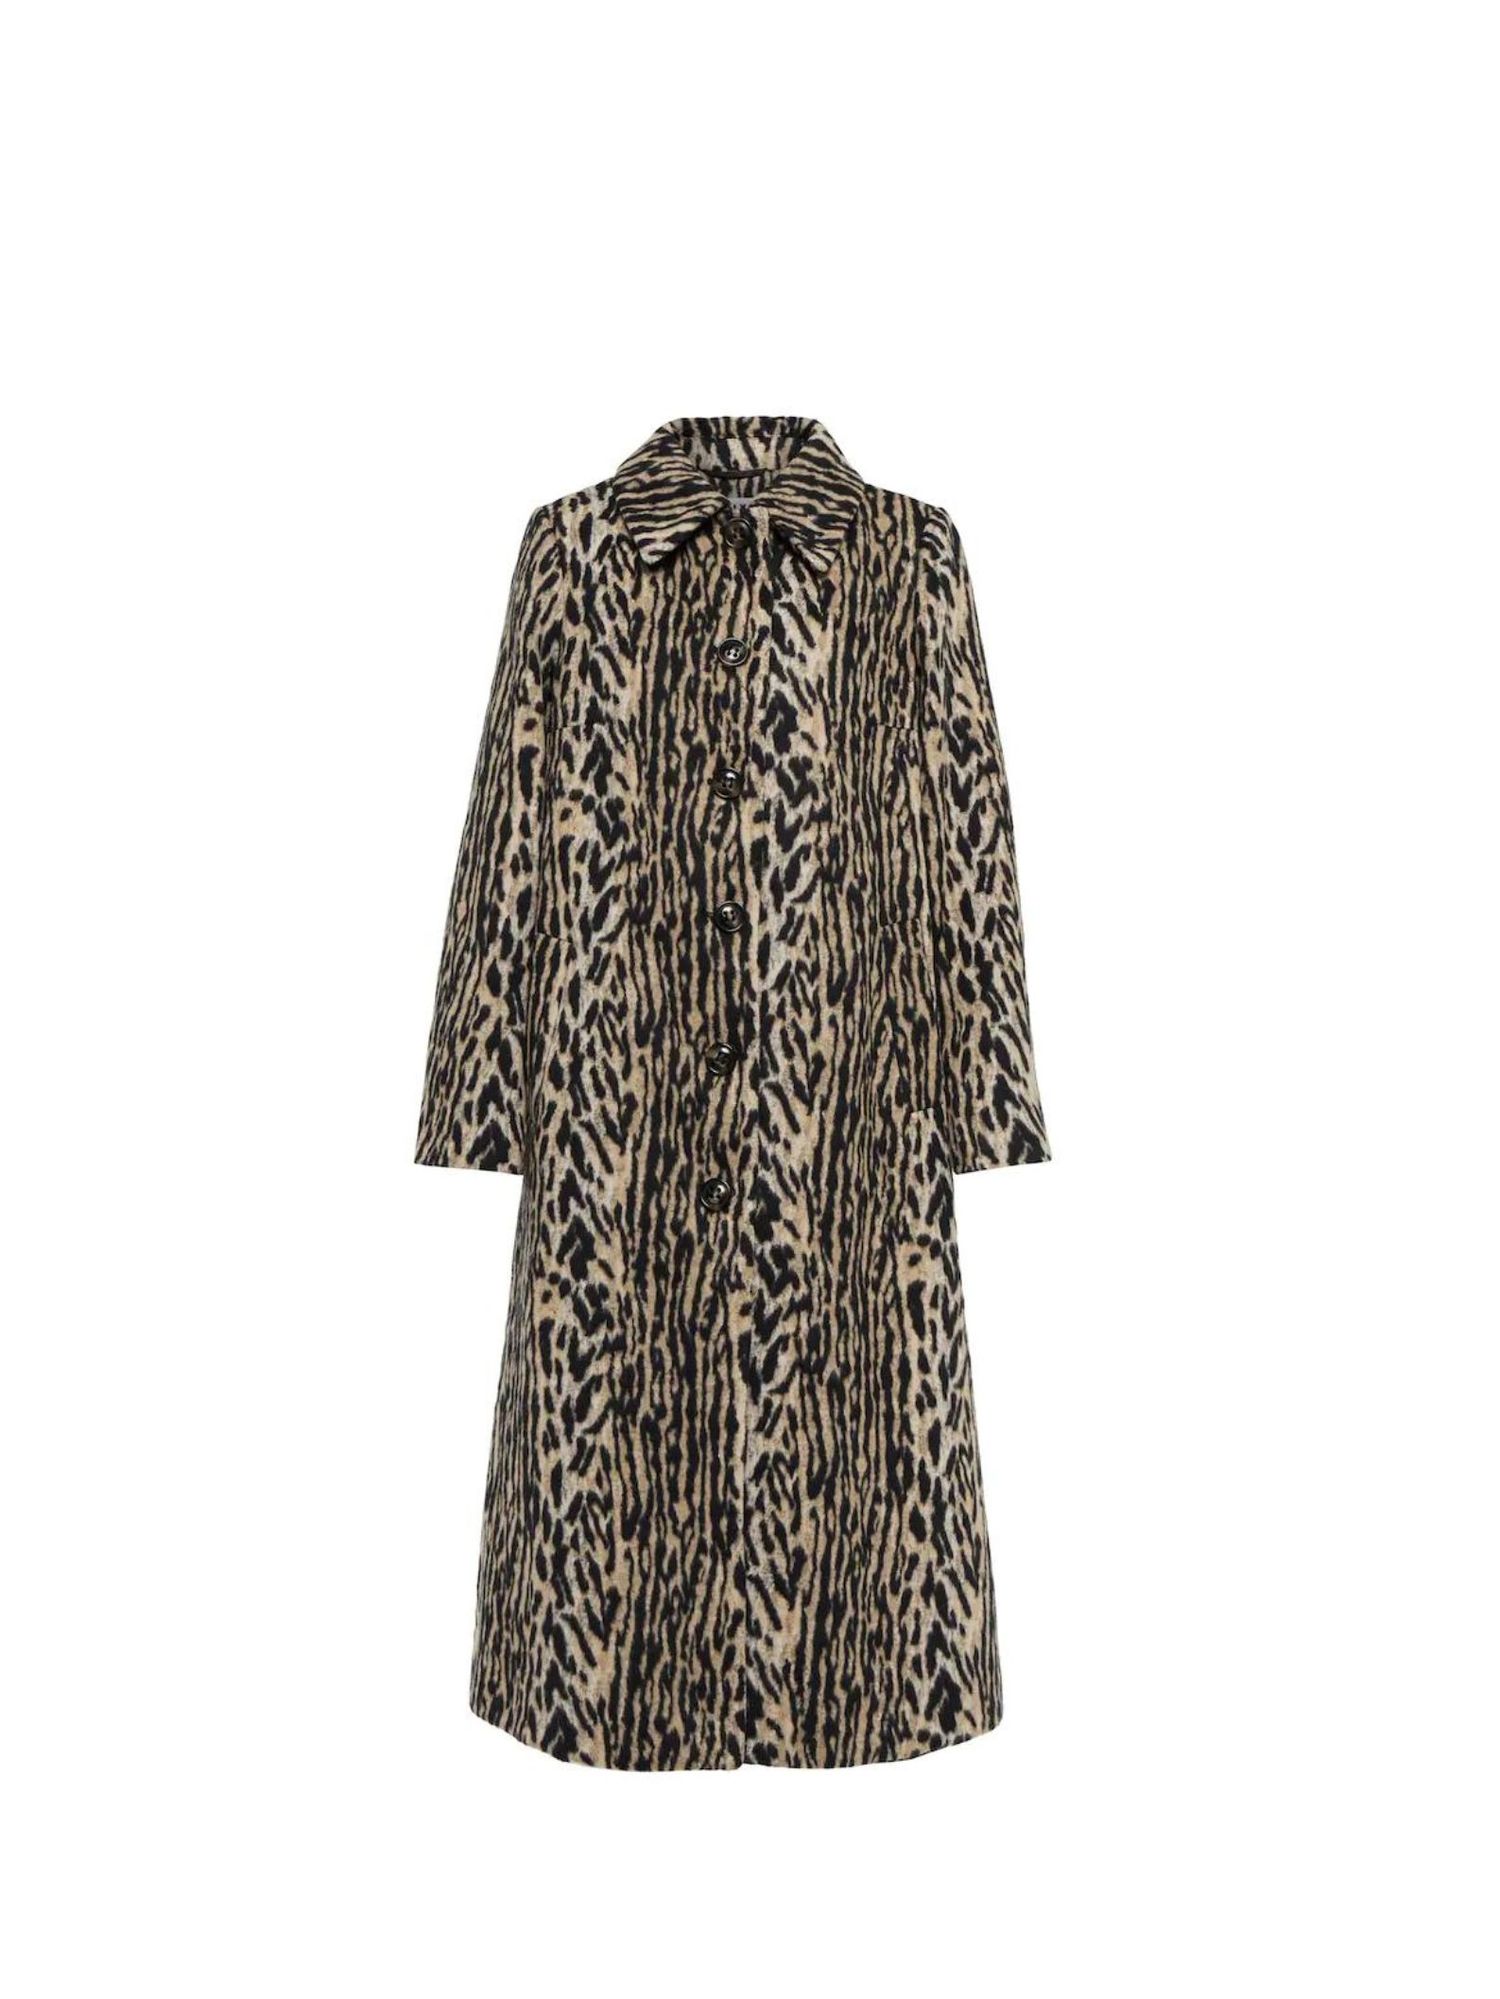 The 10 best faux fur coats to shop now - Vogue Scandinavia